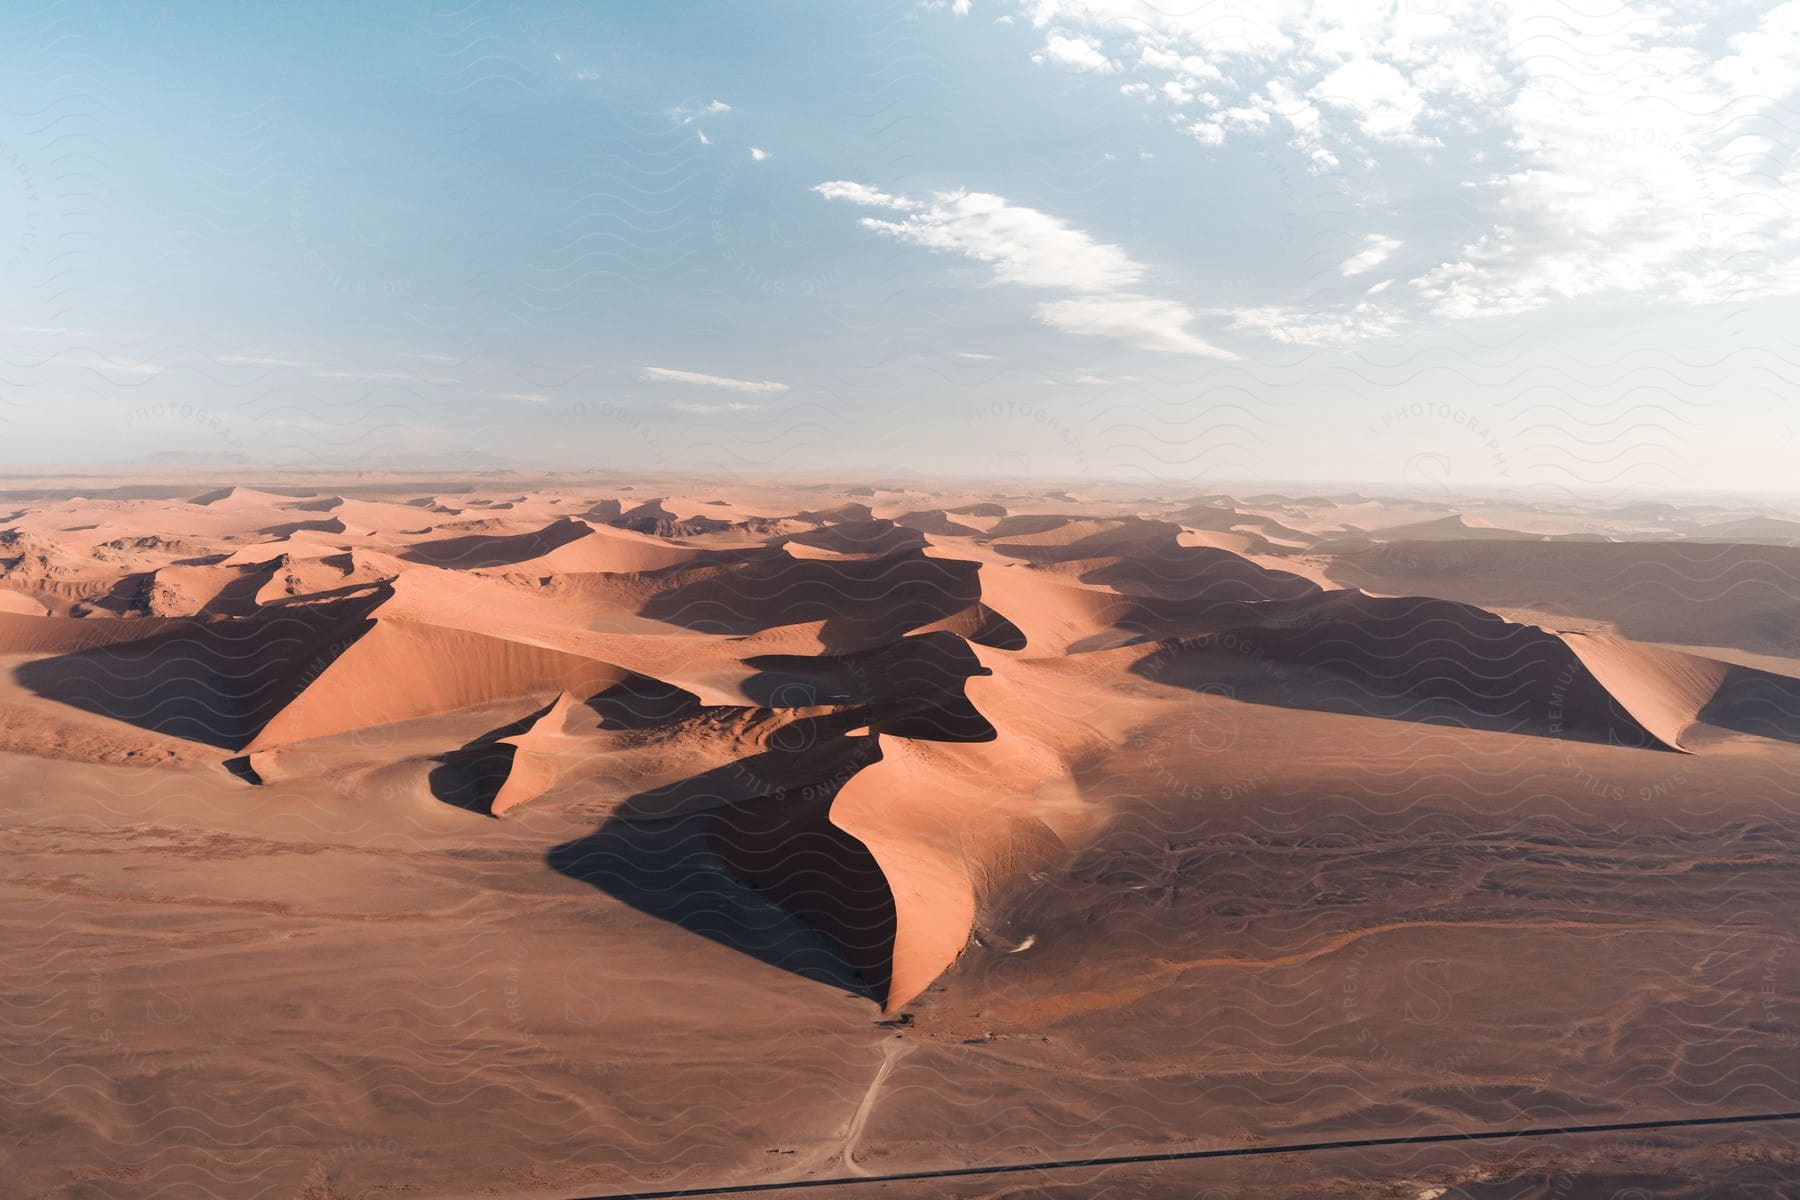 A barren desert landscape with a cloudy sky